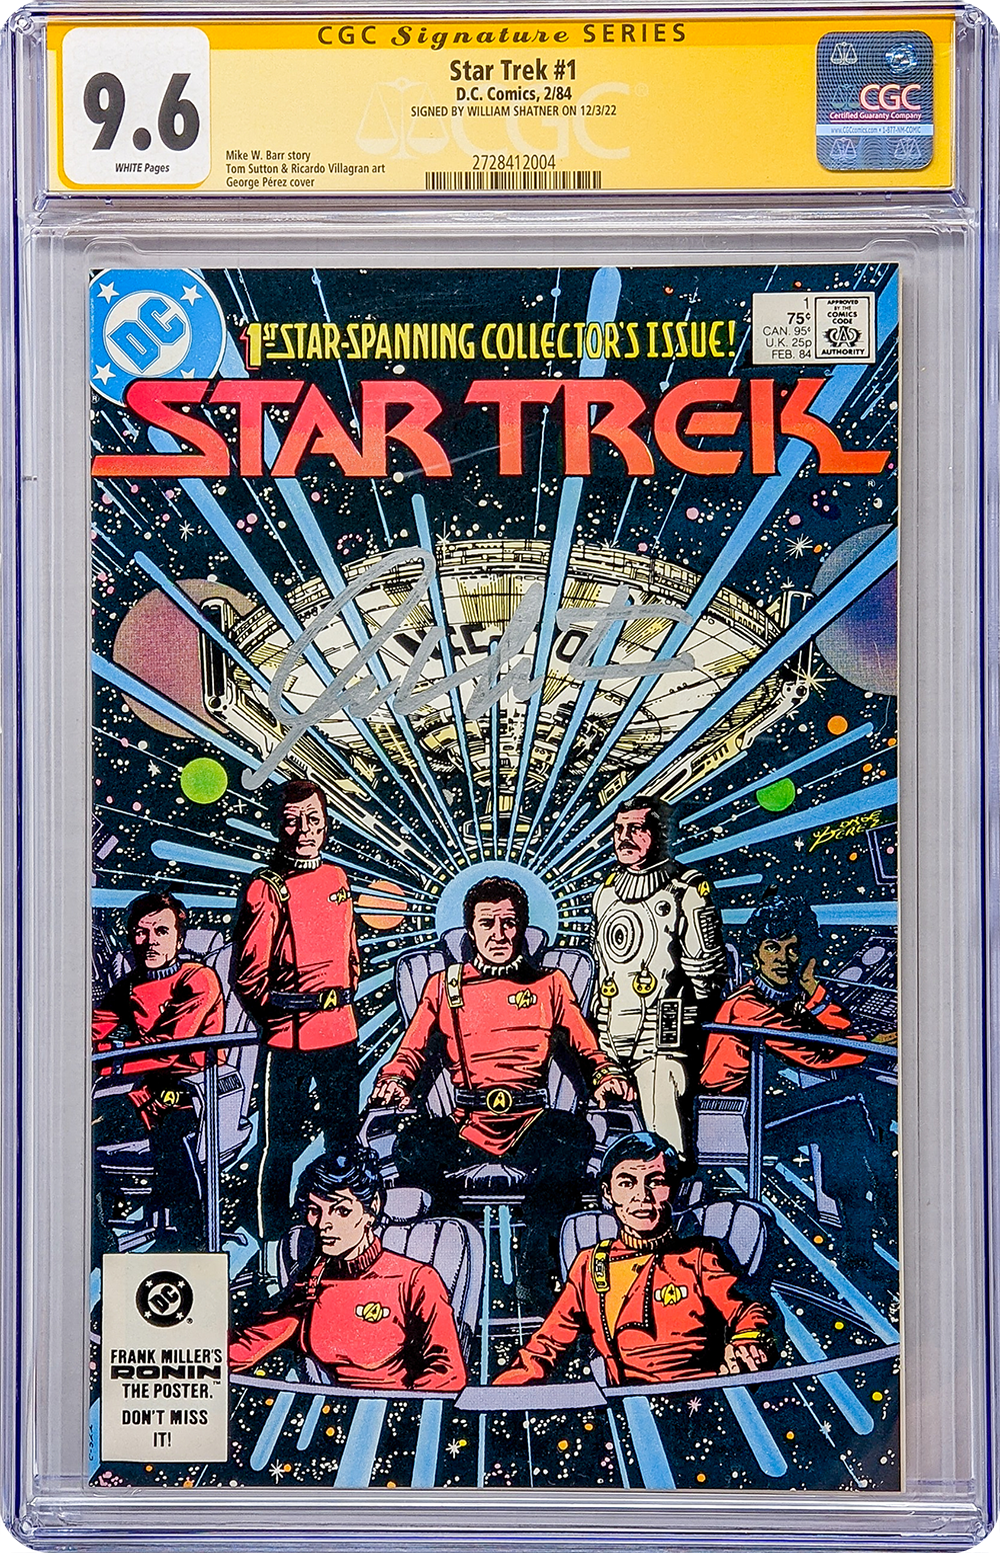 Star Trek #1 DC Comics CGC Signature Series 9.6 William Shatner GalaxyCon